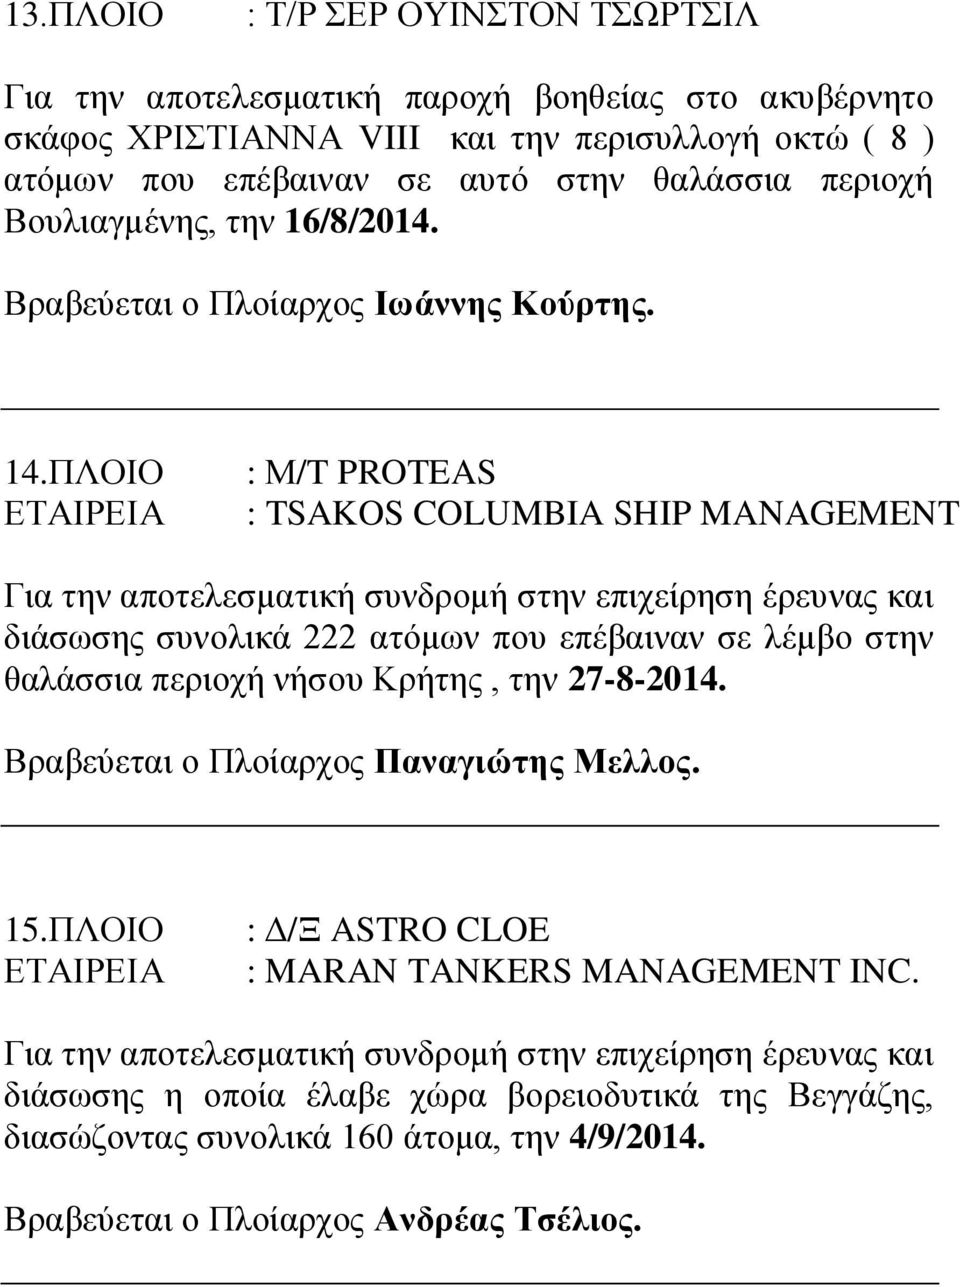 ΠΛΟΙΟ : Μ/T PROTEAS : TSAKOS COLUMBIA SHIP MANAGEMENT διάσωσης συνολικά 222 ατόμων που επέβαιναν σε λέμβο στην θαλάσσια περιοχή νήσου Κρήτης, την 27-8-2014.